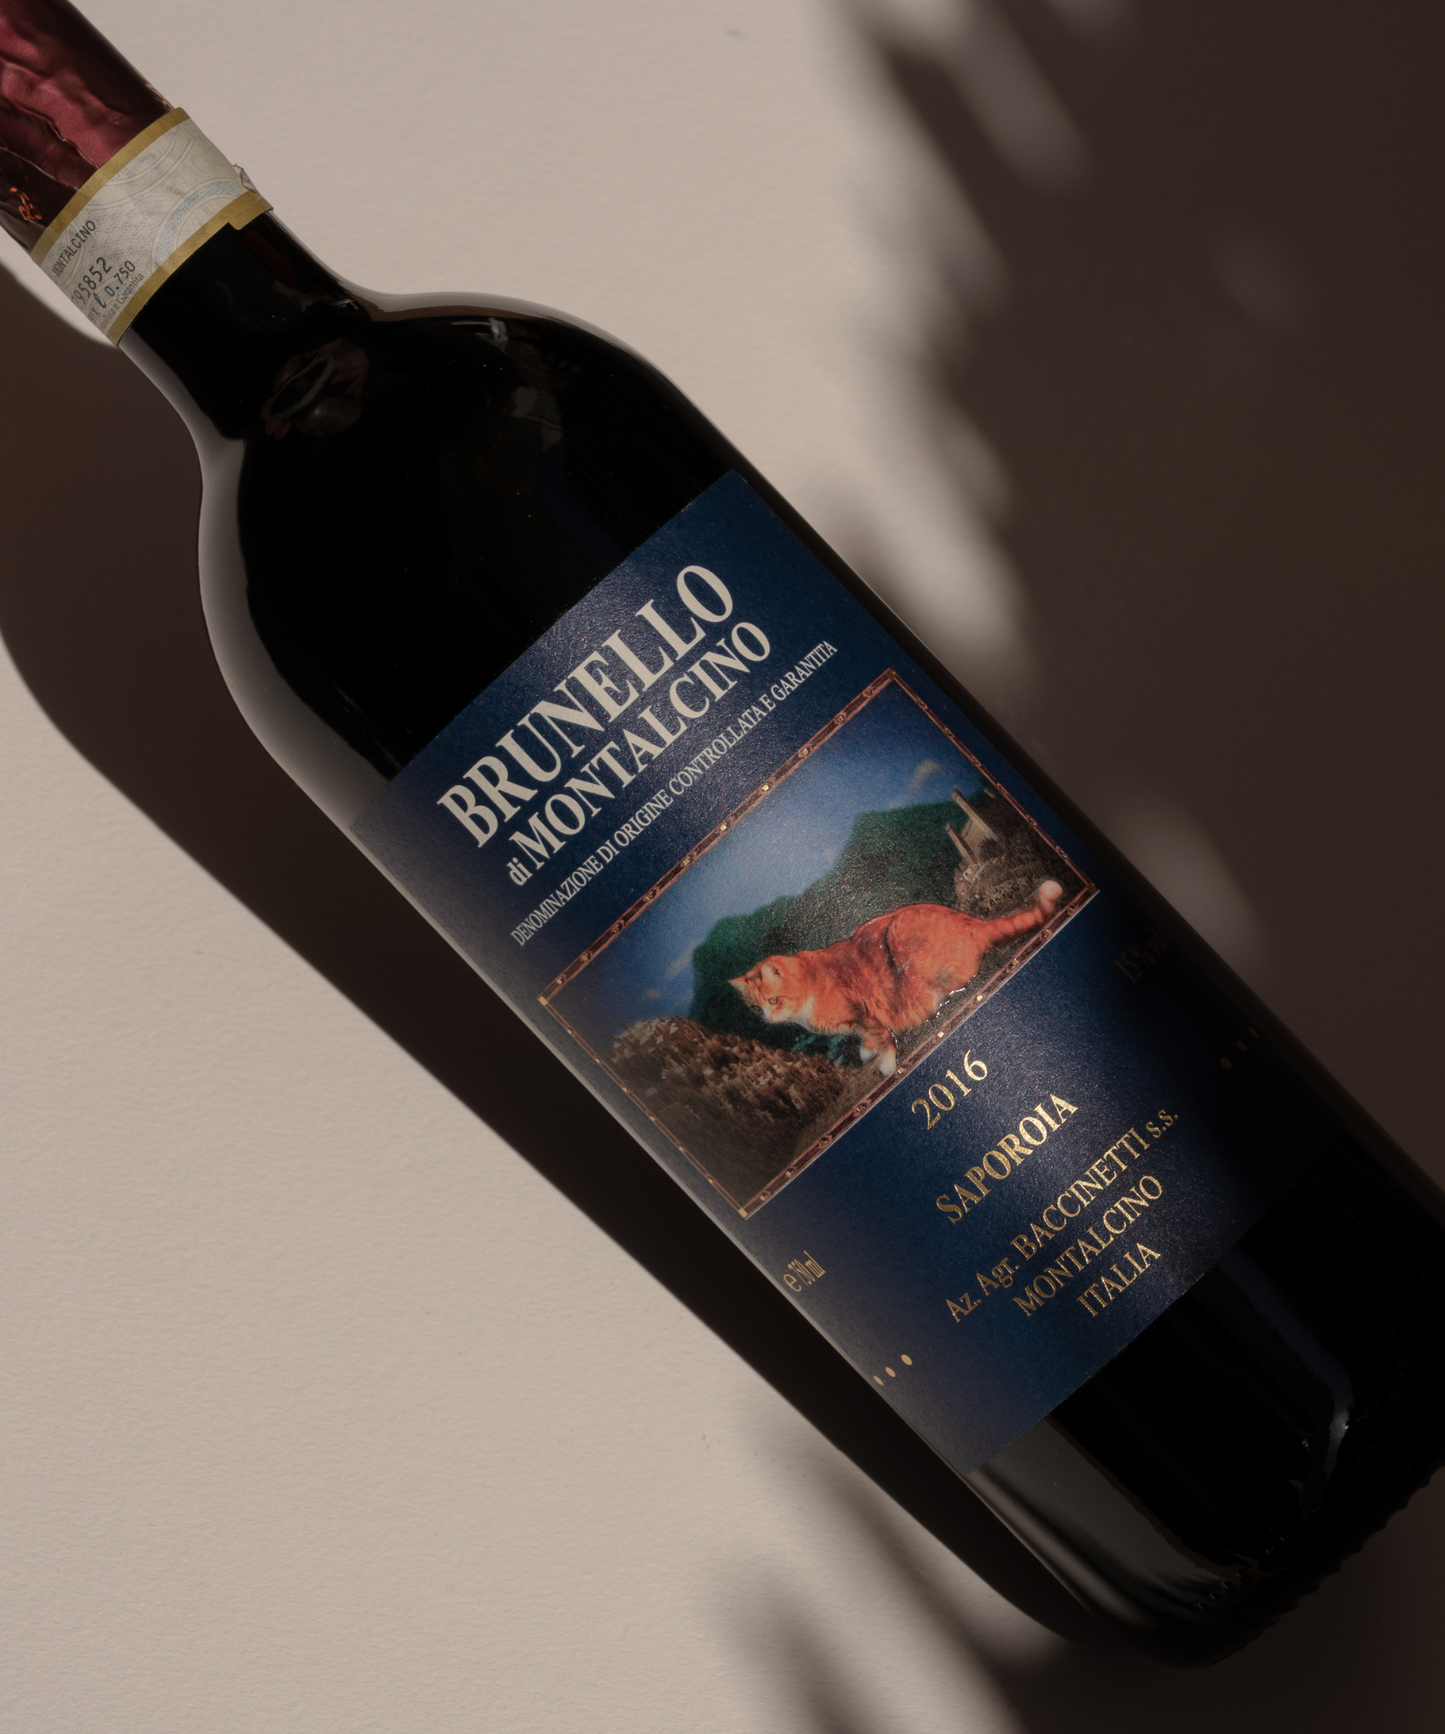 Brunello di Montalcino 2016 bottle red wine